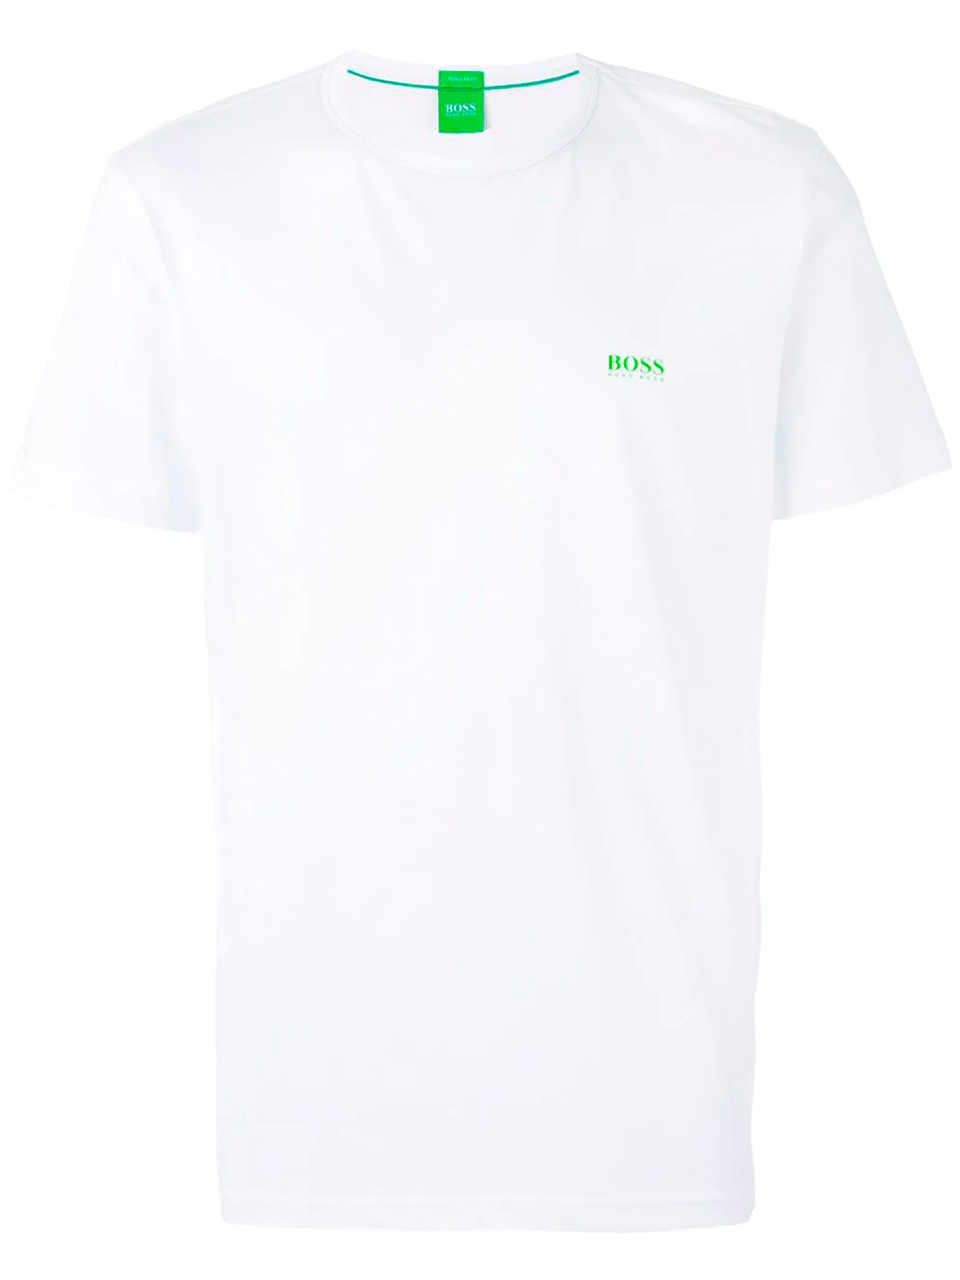 Imagem de: Camiseta BOSS Branca com Logo Verde